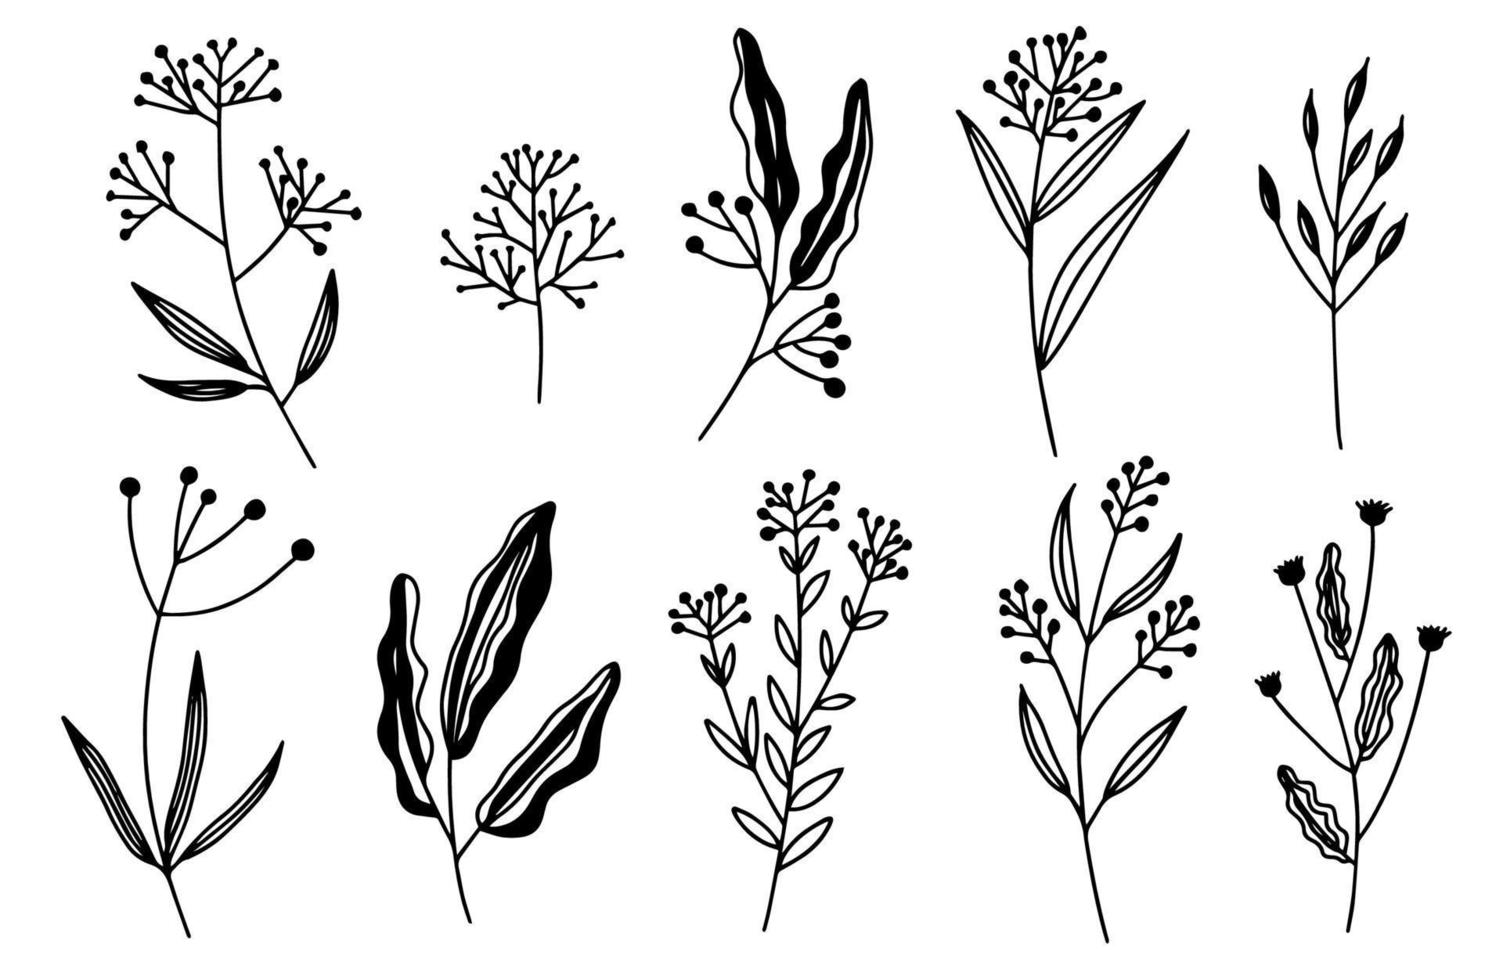 illustrations vectorielles - un ensemble de fleurs graphiques, plantes. 10 éléments de conception de style croquis dessinés à la main. parfait pour créer des imprimés, des motifs, des tatouages, etc. vecteur